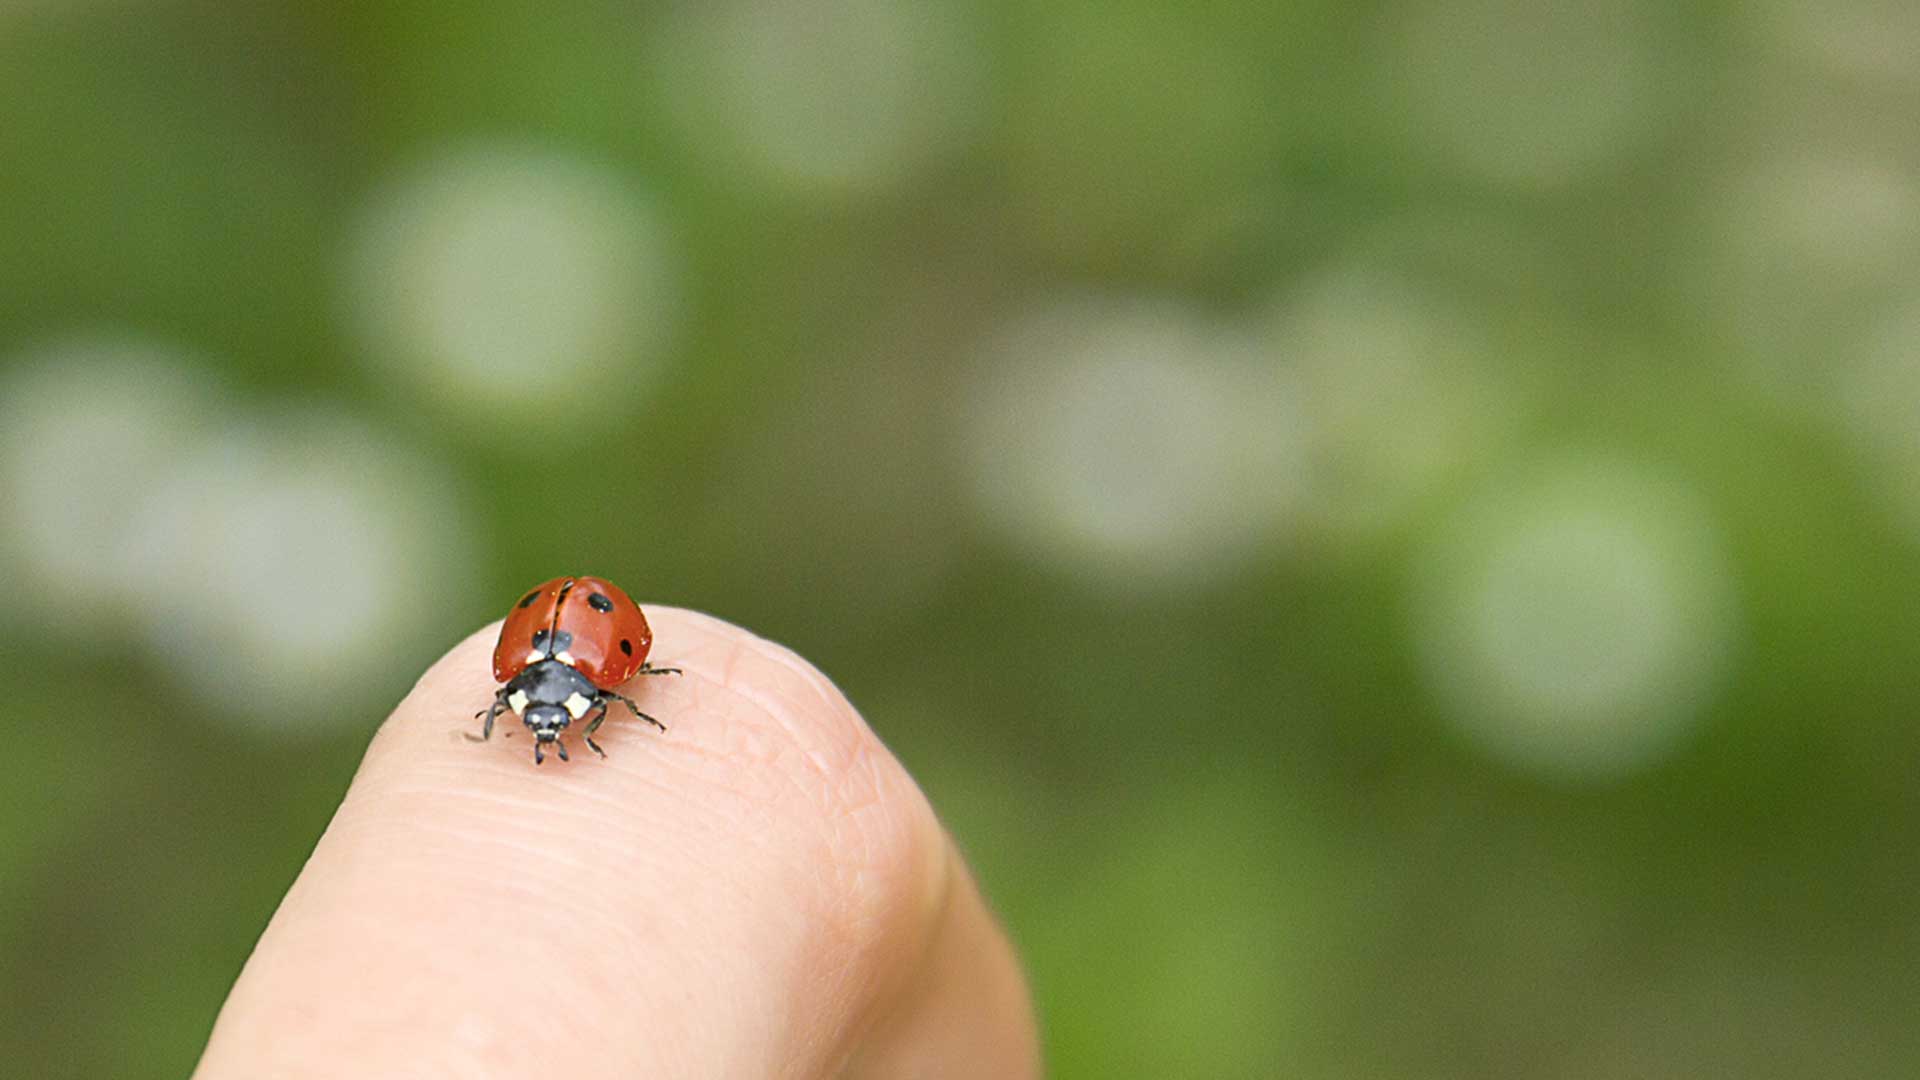 Ladybug on someones finger